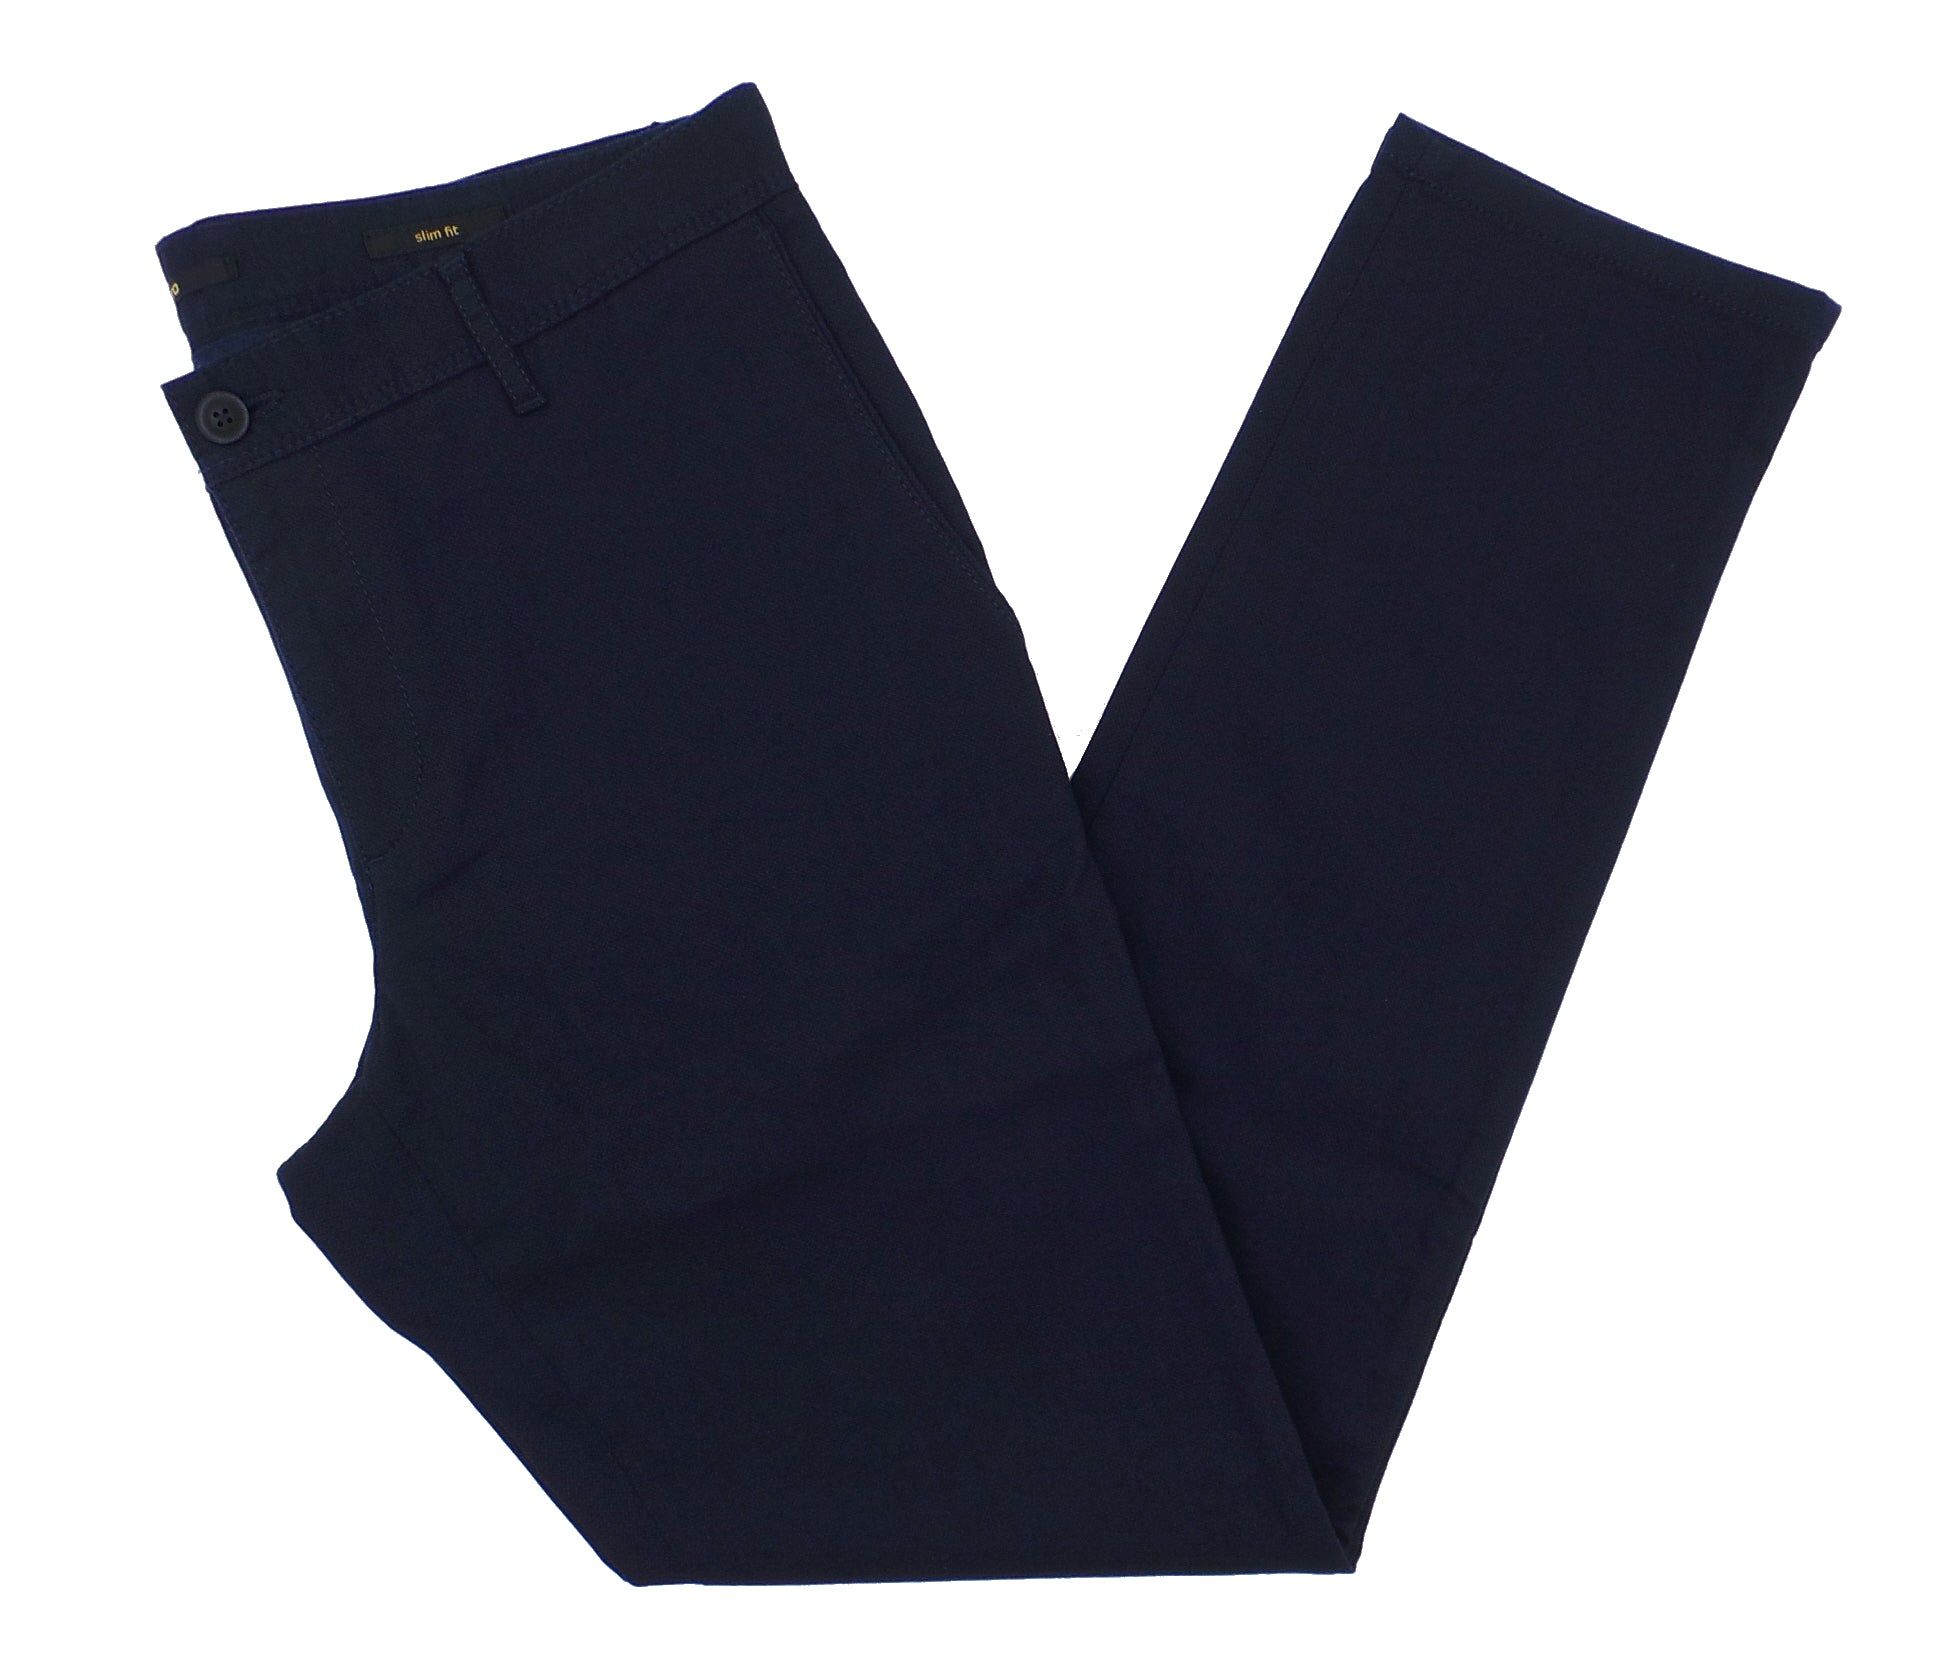 Zara Smart trousers a bi-stretch cotton blend | Mall of America®